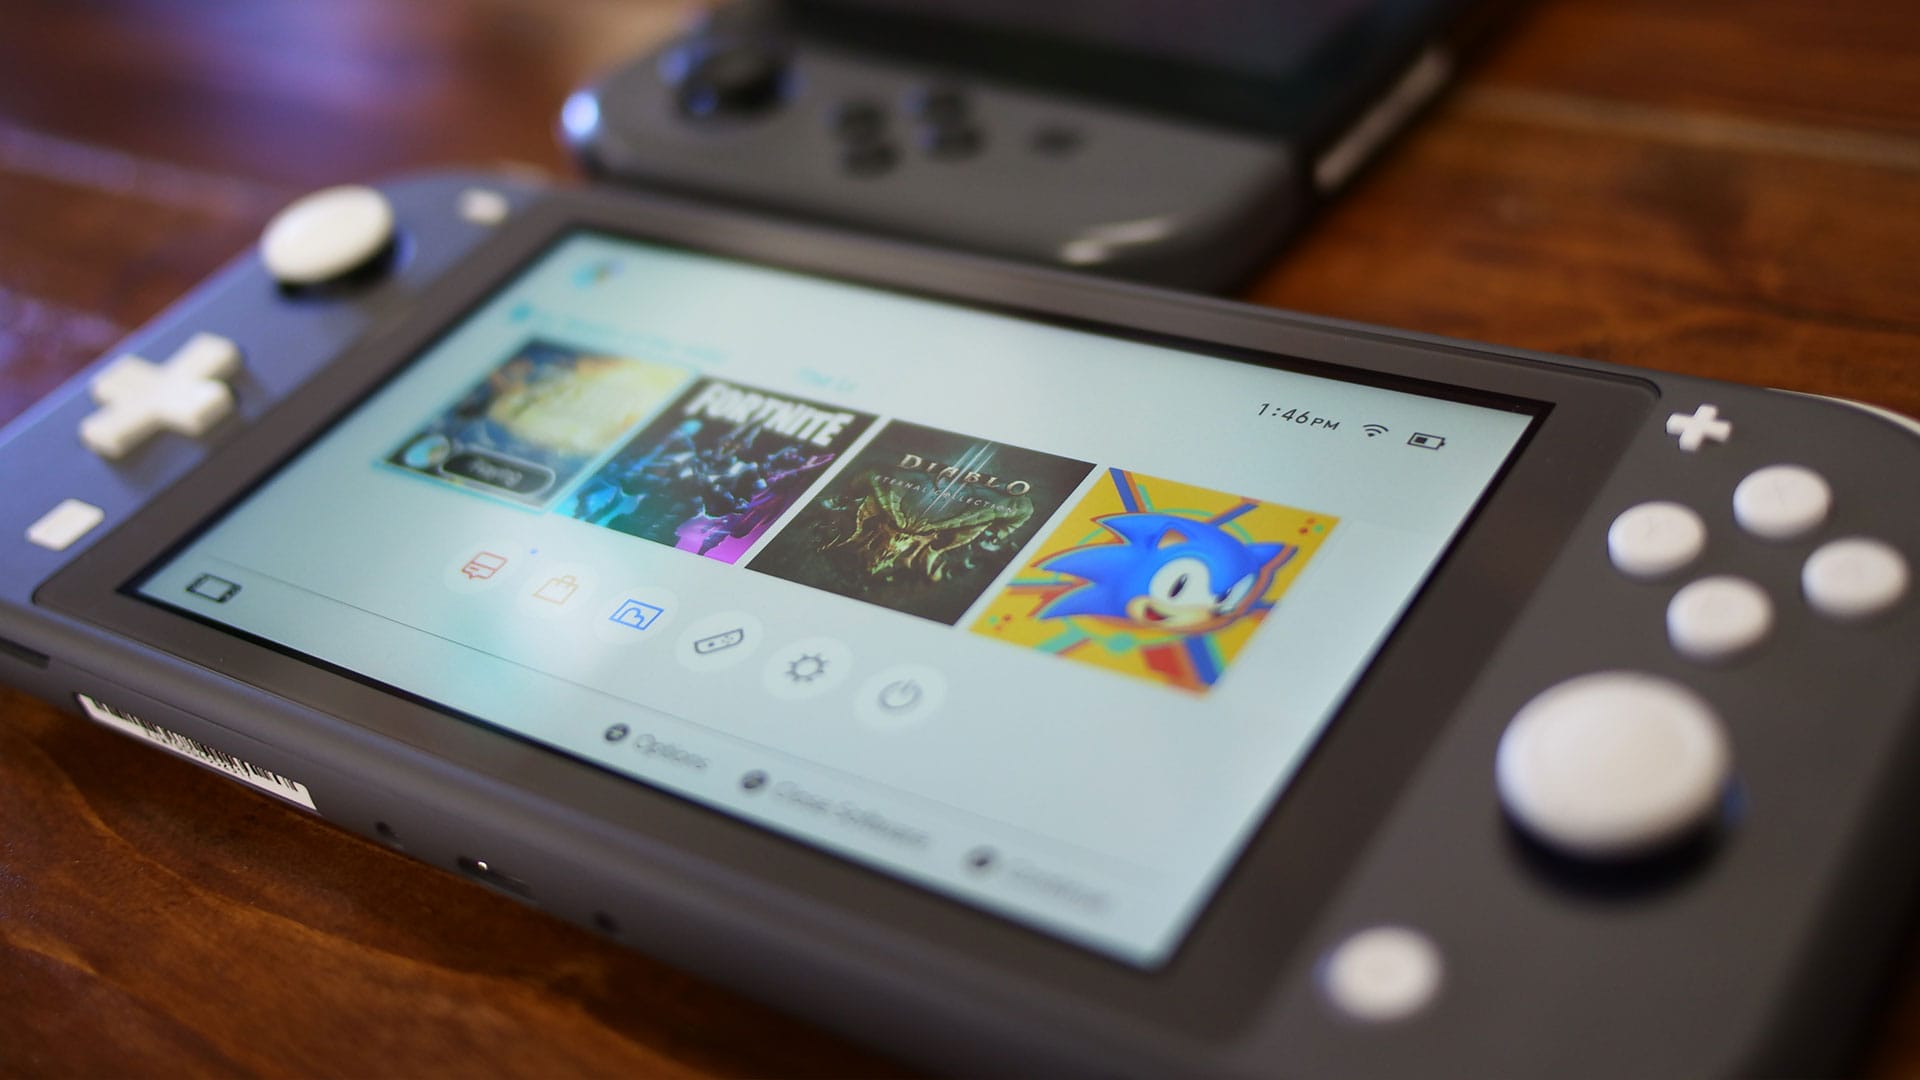 Las filtraciones sugieren que Nintendo Switch podría recibir "súper" mejoras